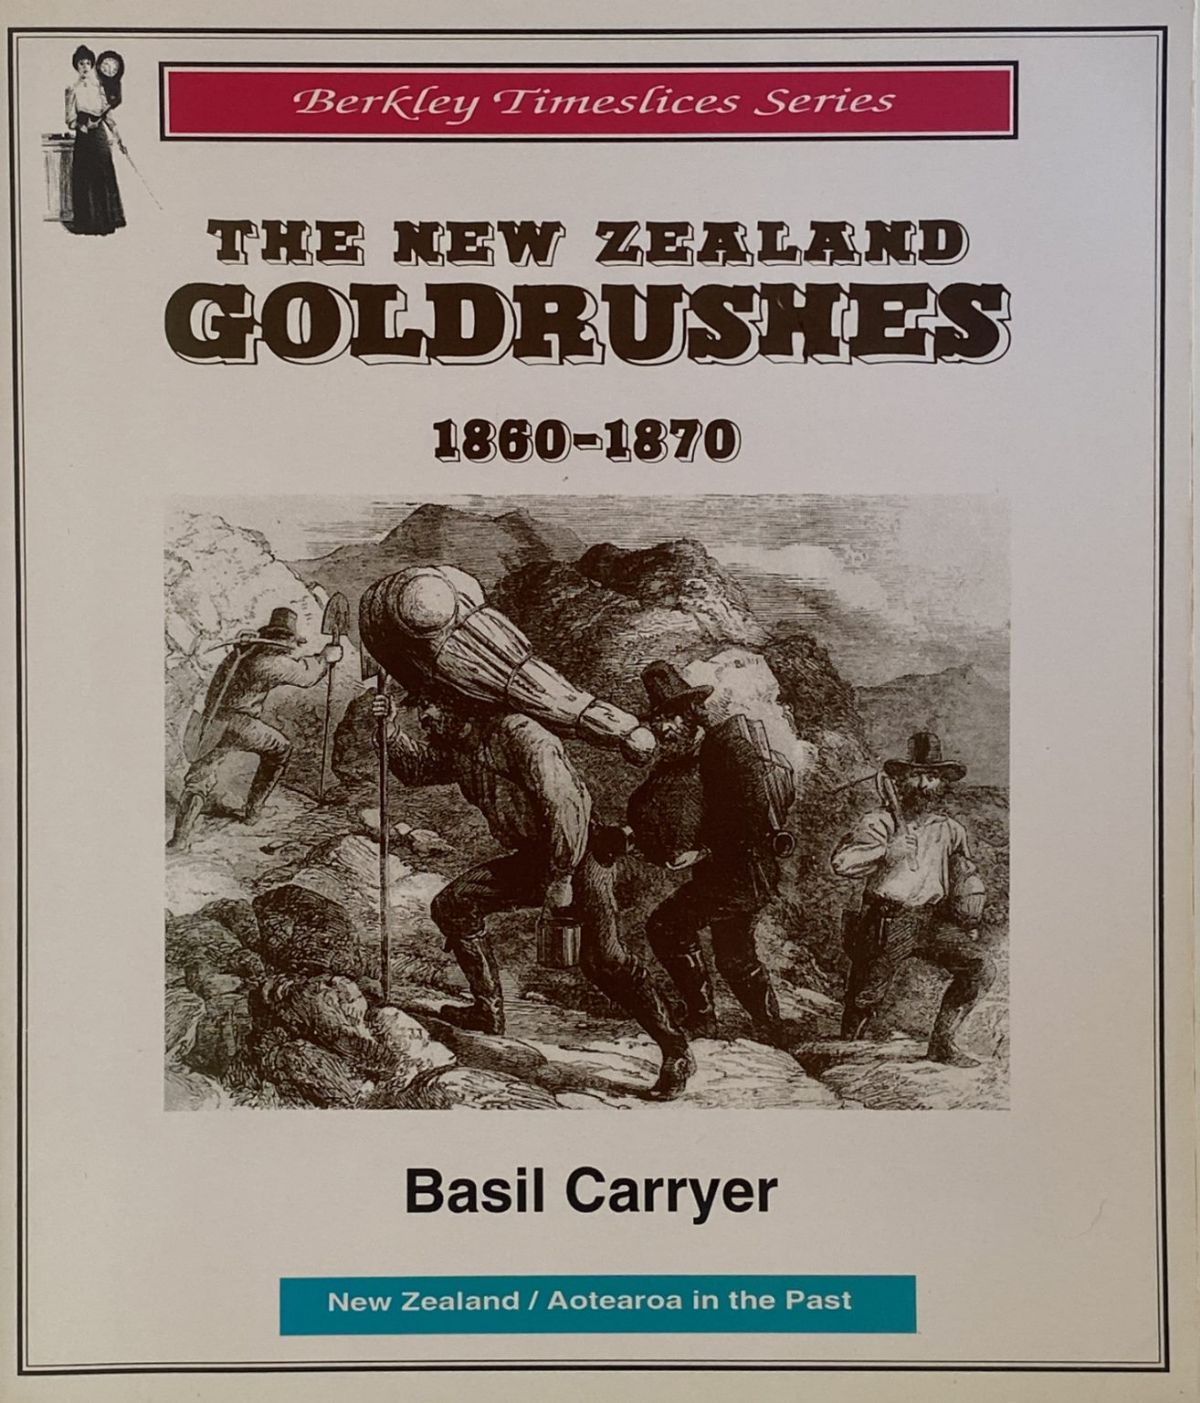 THE NEW ZEALAND GOLDRUSHES 1860-1870